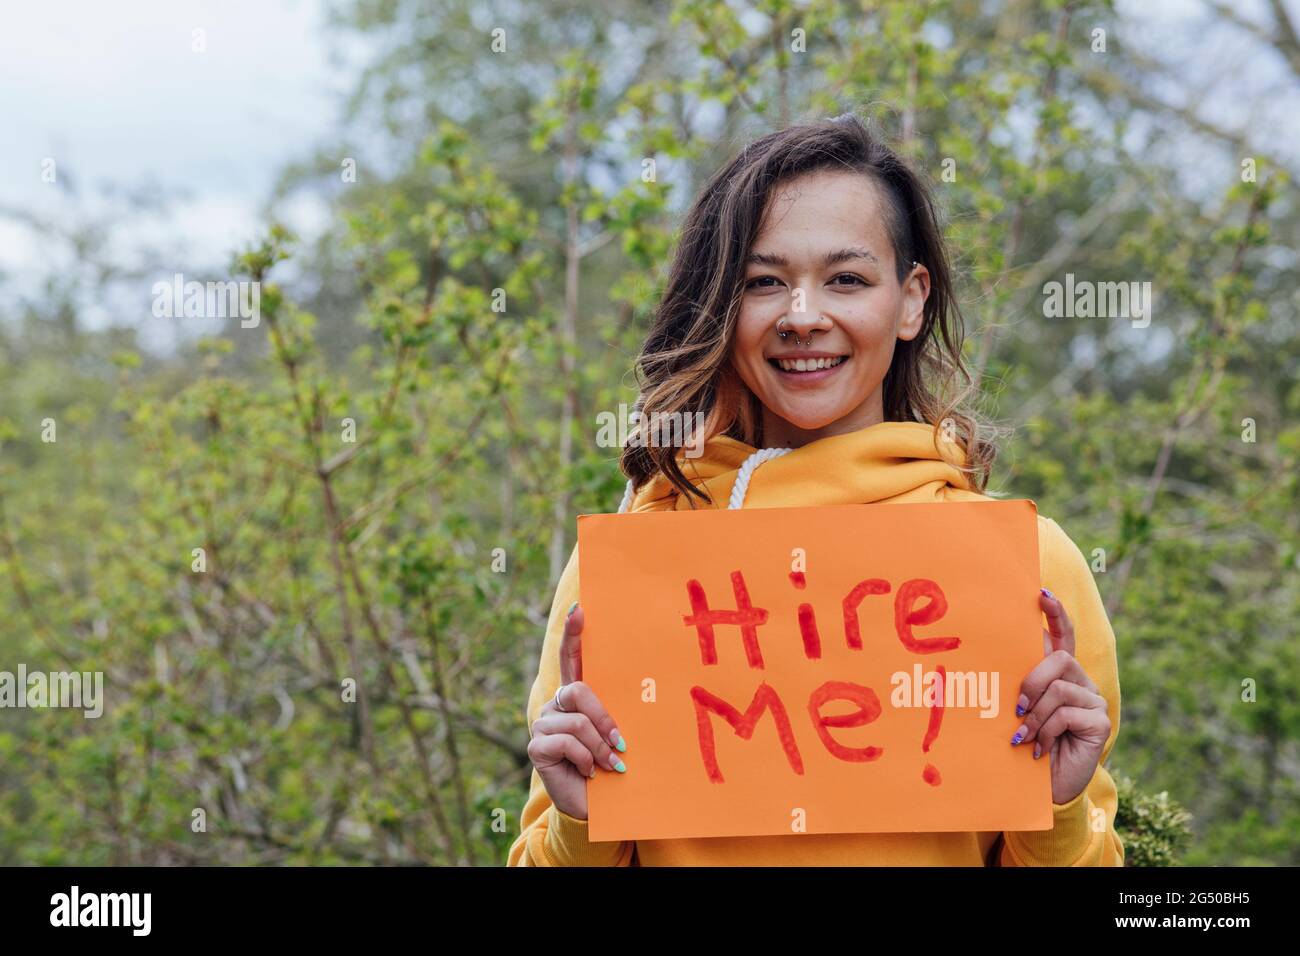 Une jeune femme debout devant les arbres, tenant un morceau de papier avec "louez-moi" dessus. Elle regarde la caméra et sourit. Banque D'Images